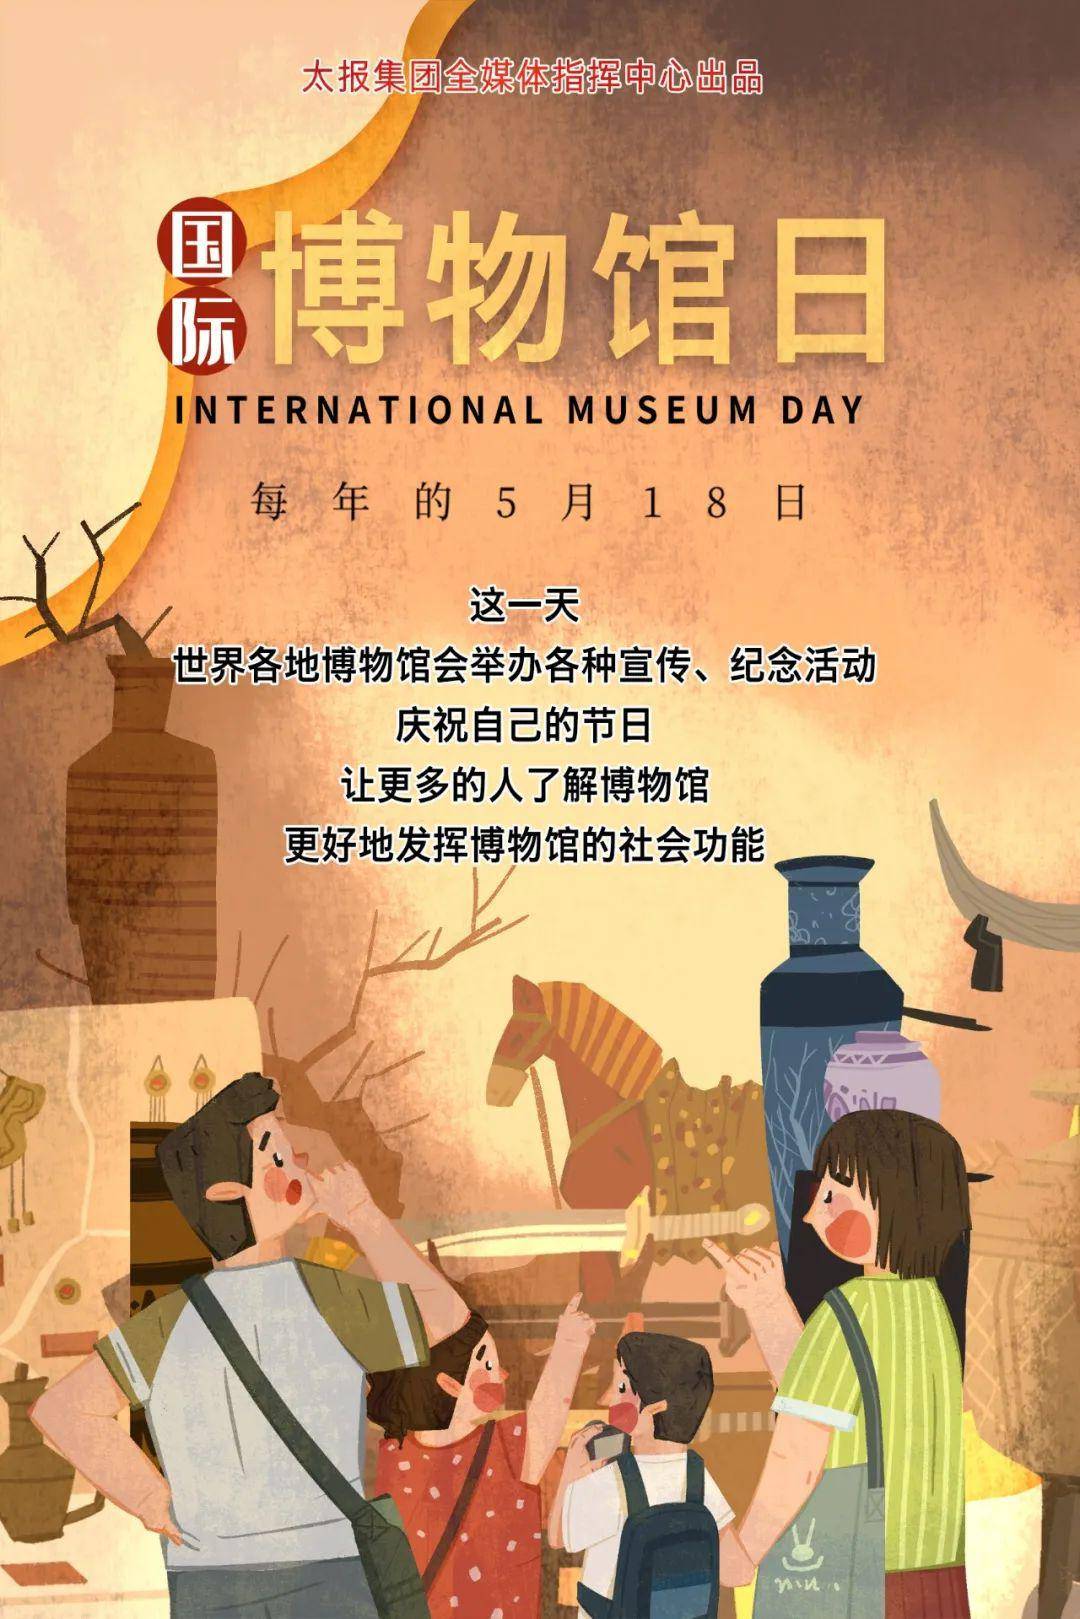 国际博物馆日,太原市多项文化活动等你来参加!